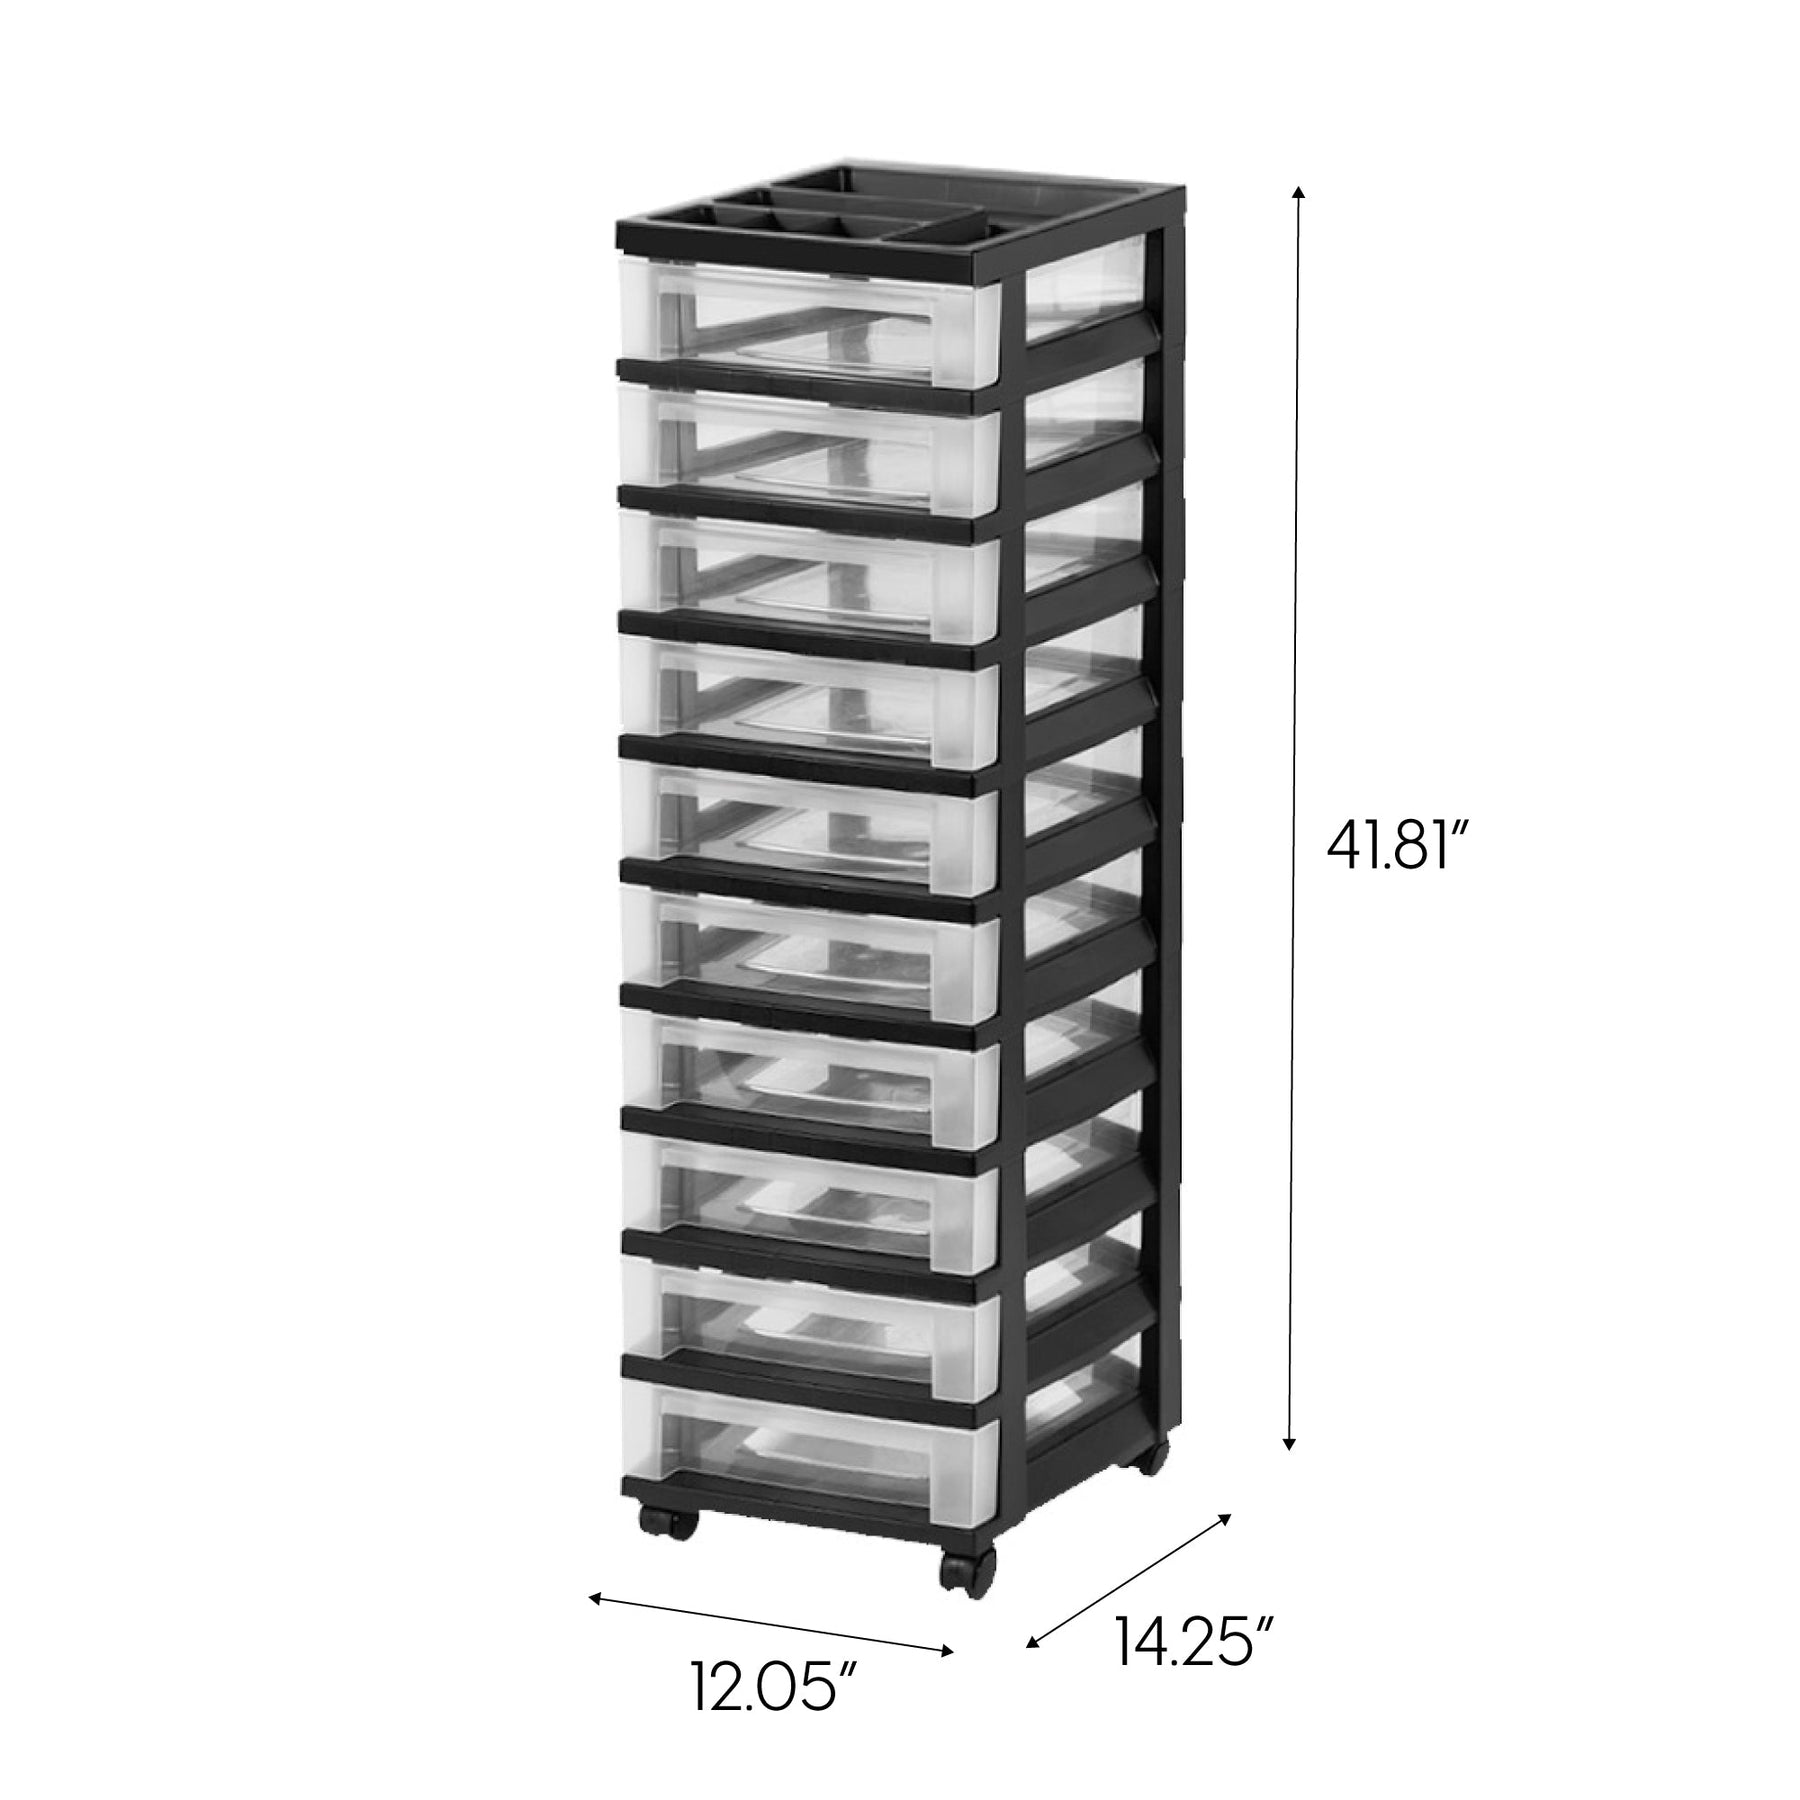 10-Drawer Mobile Organizer, Storage Cart